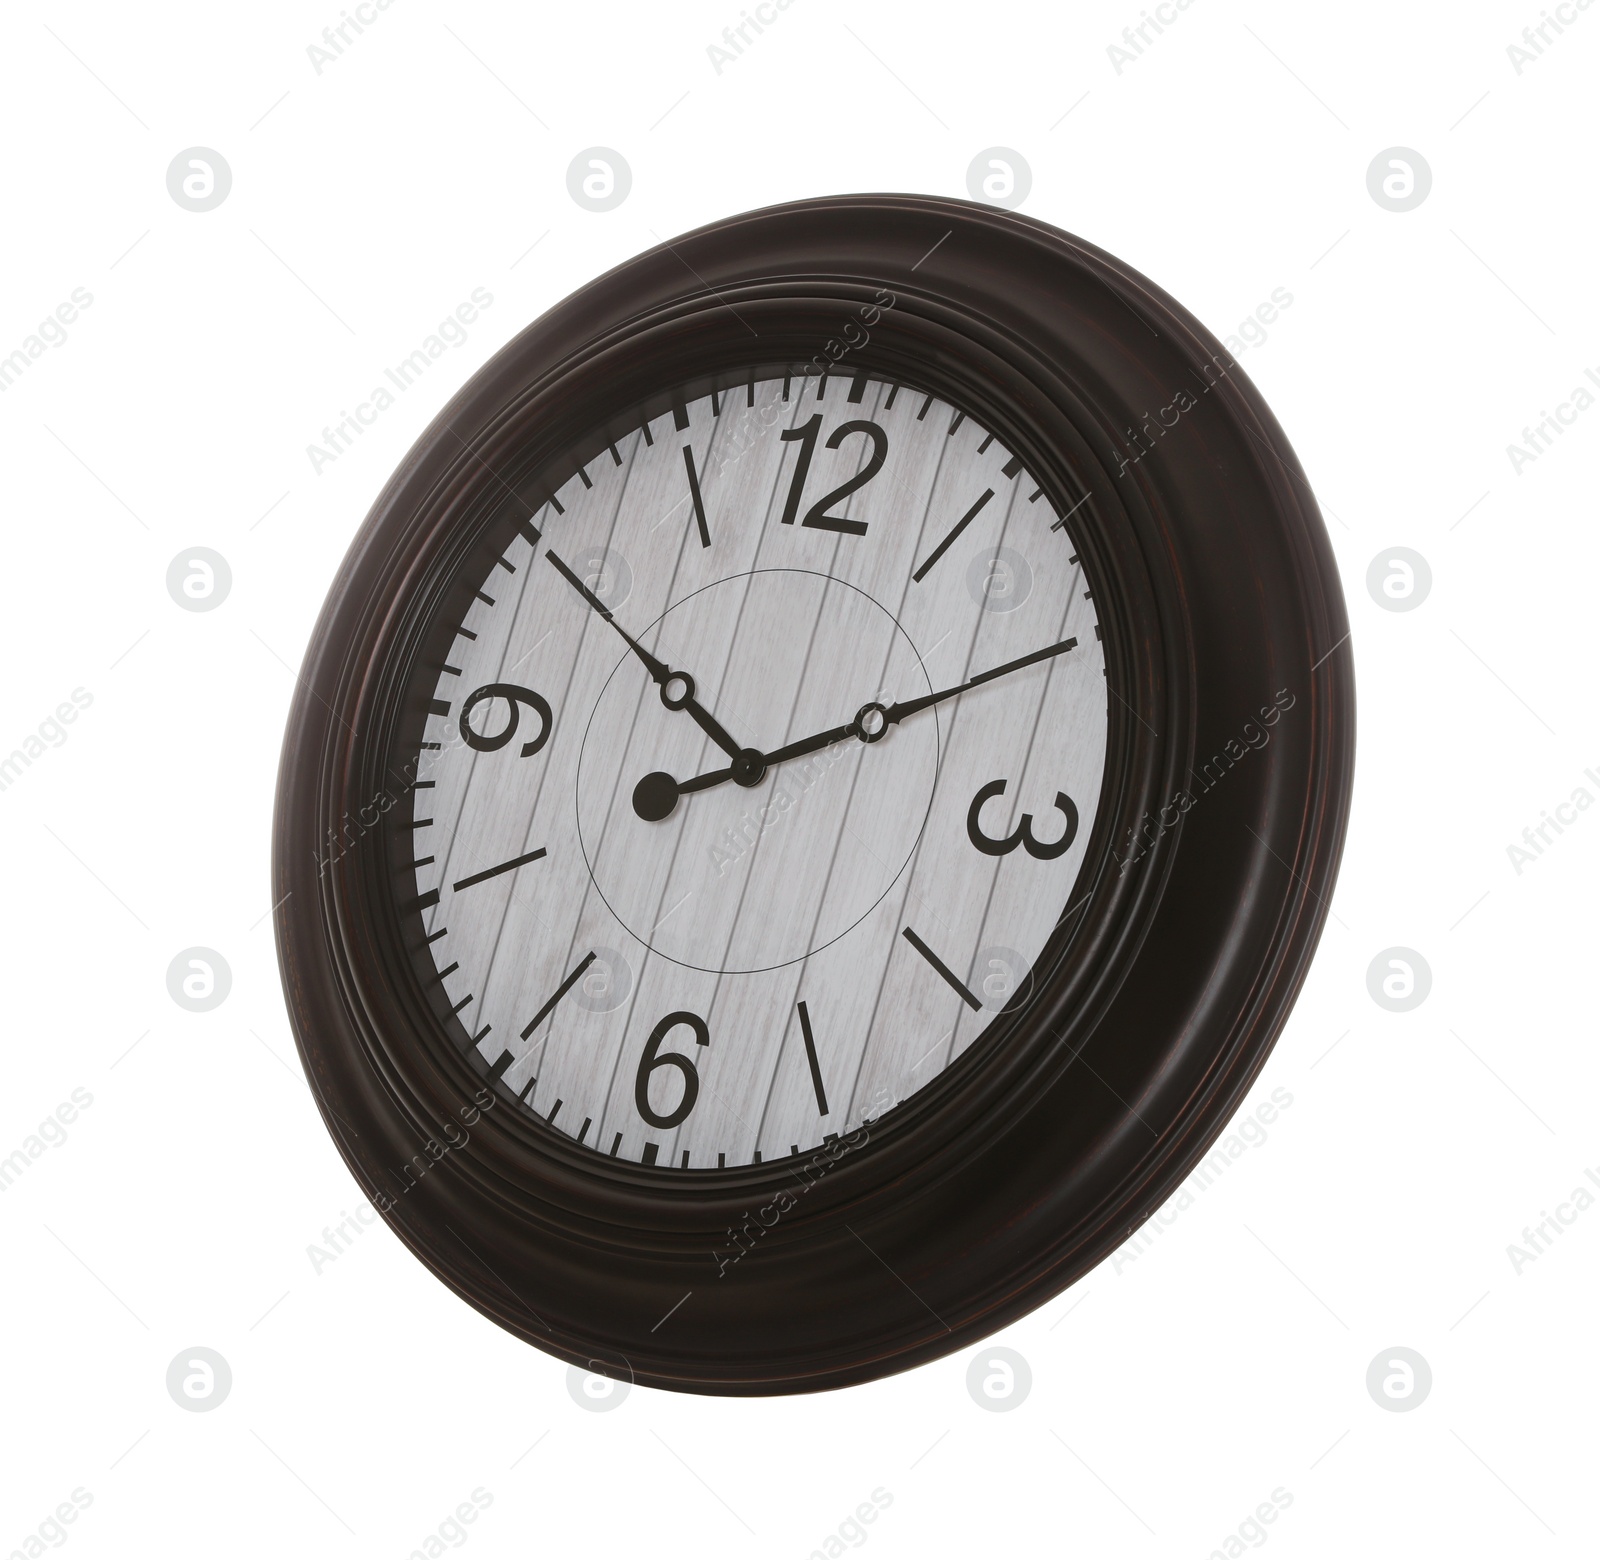 Photo of Stylish round wall clock isolated on white